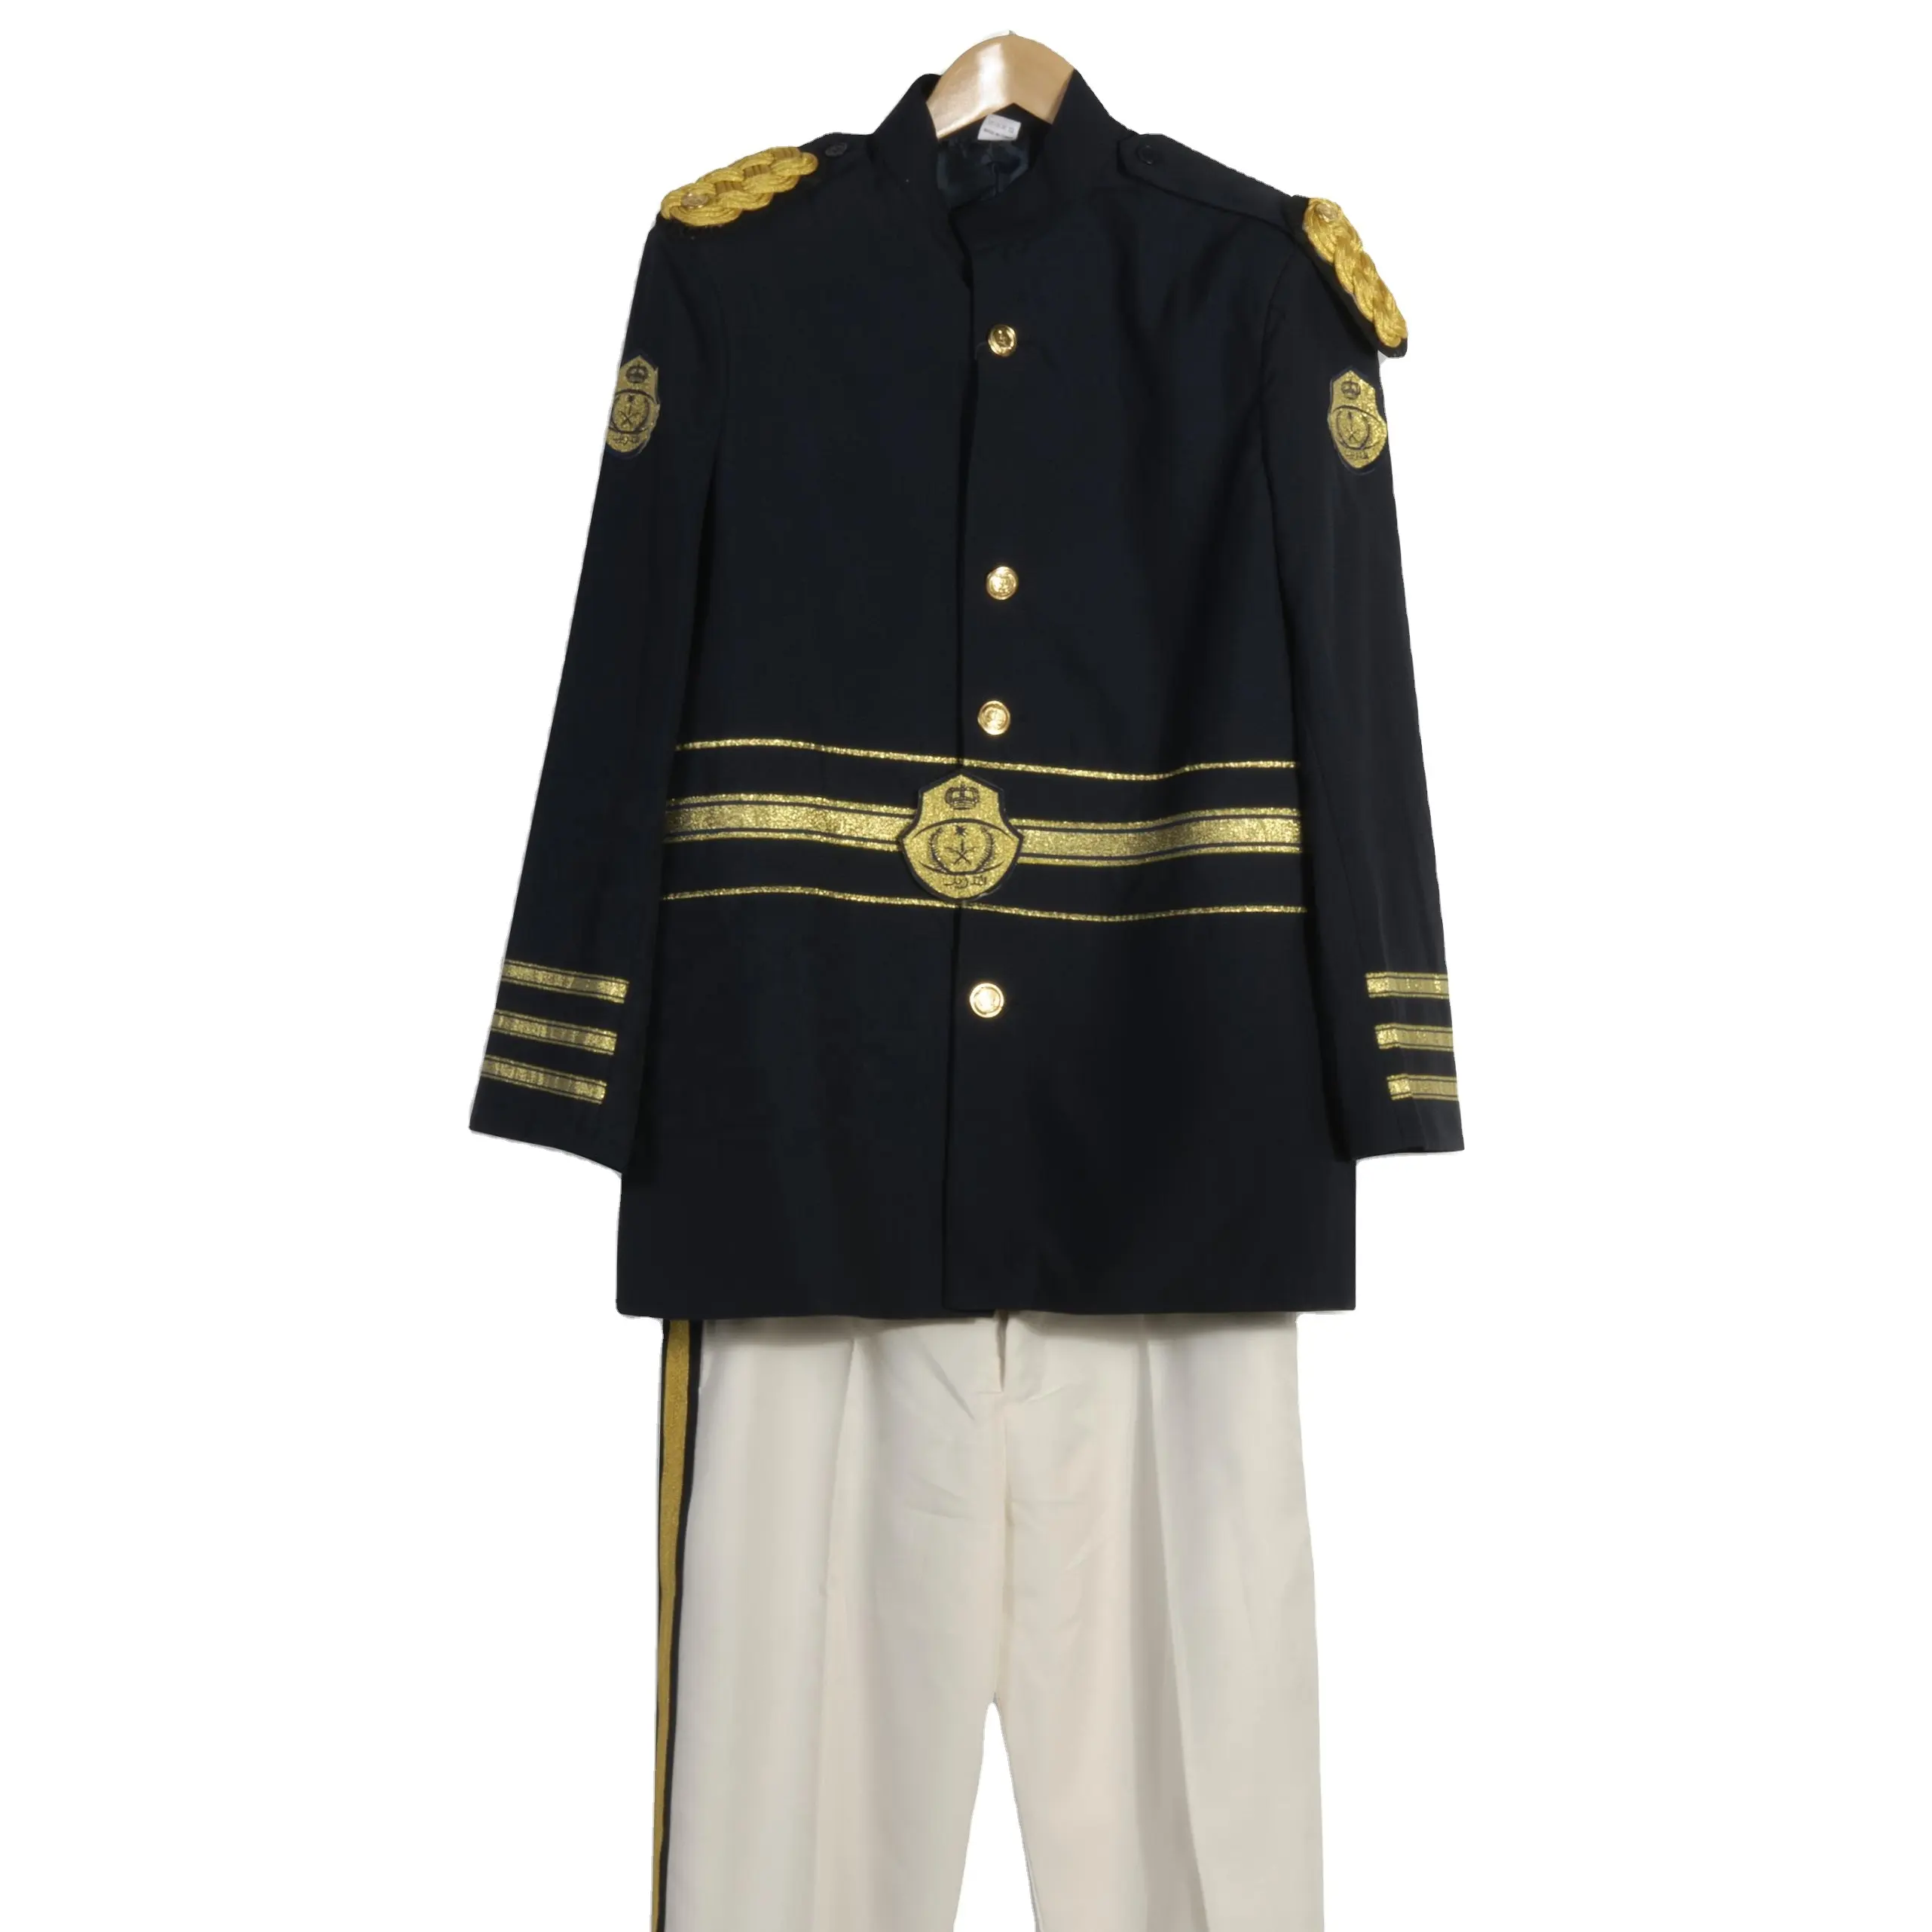 Высокое качество церемониальная форма костюм различных цветов куртка продажа дешево